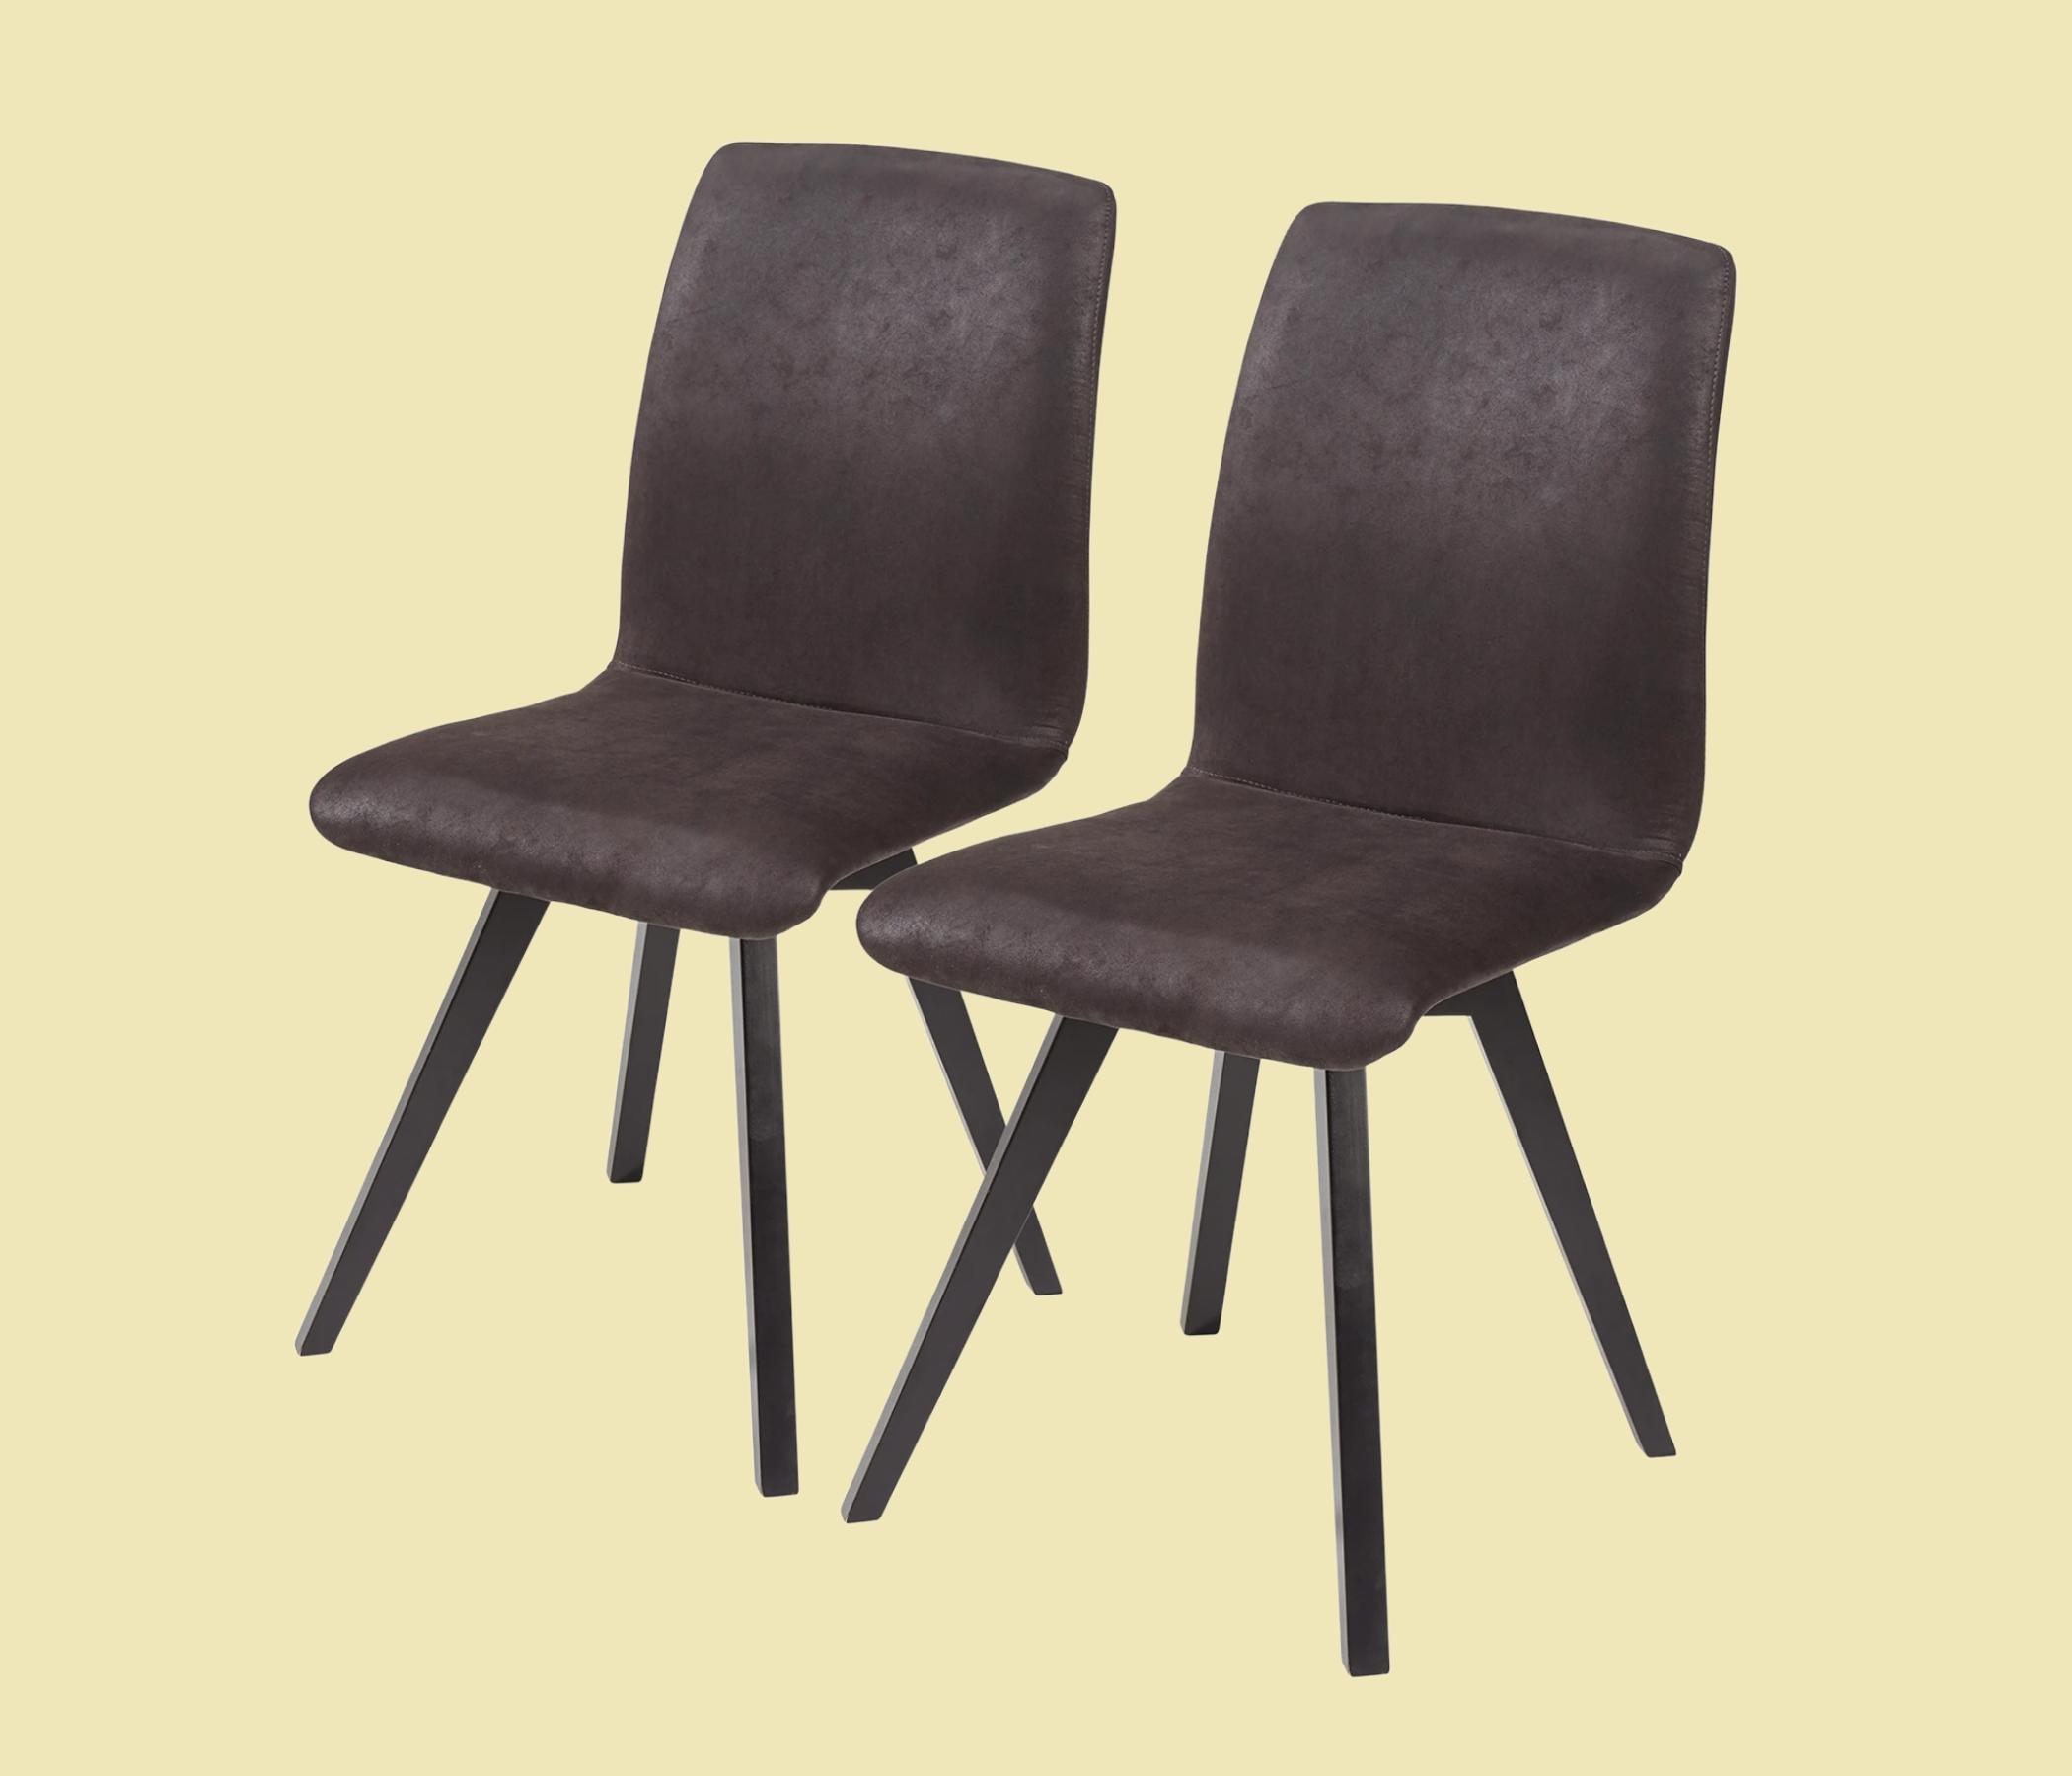 2x Stuhl aus hochwertigem Lederimitat Dunkelbraun